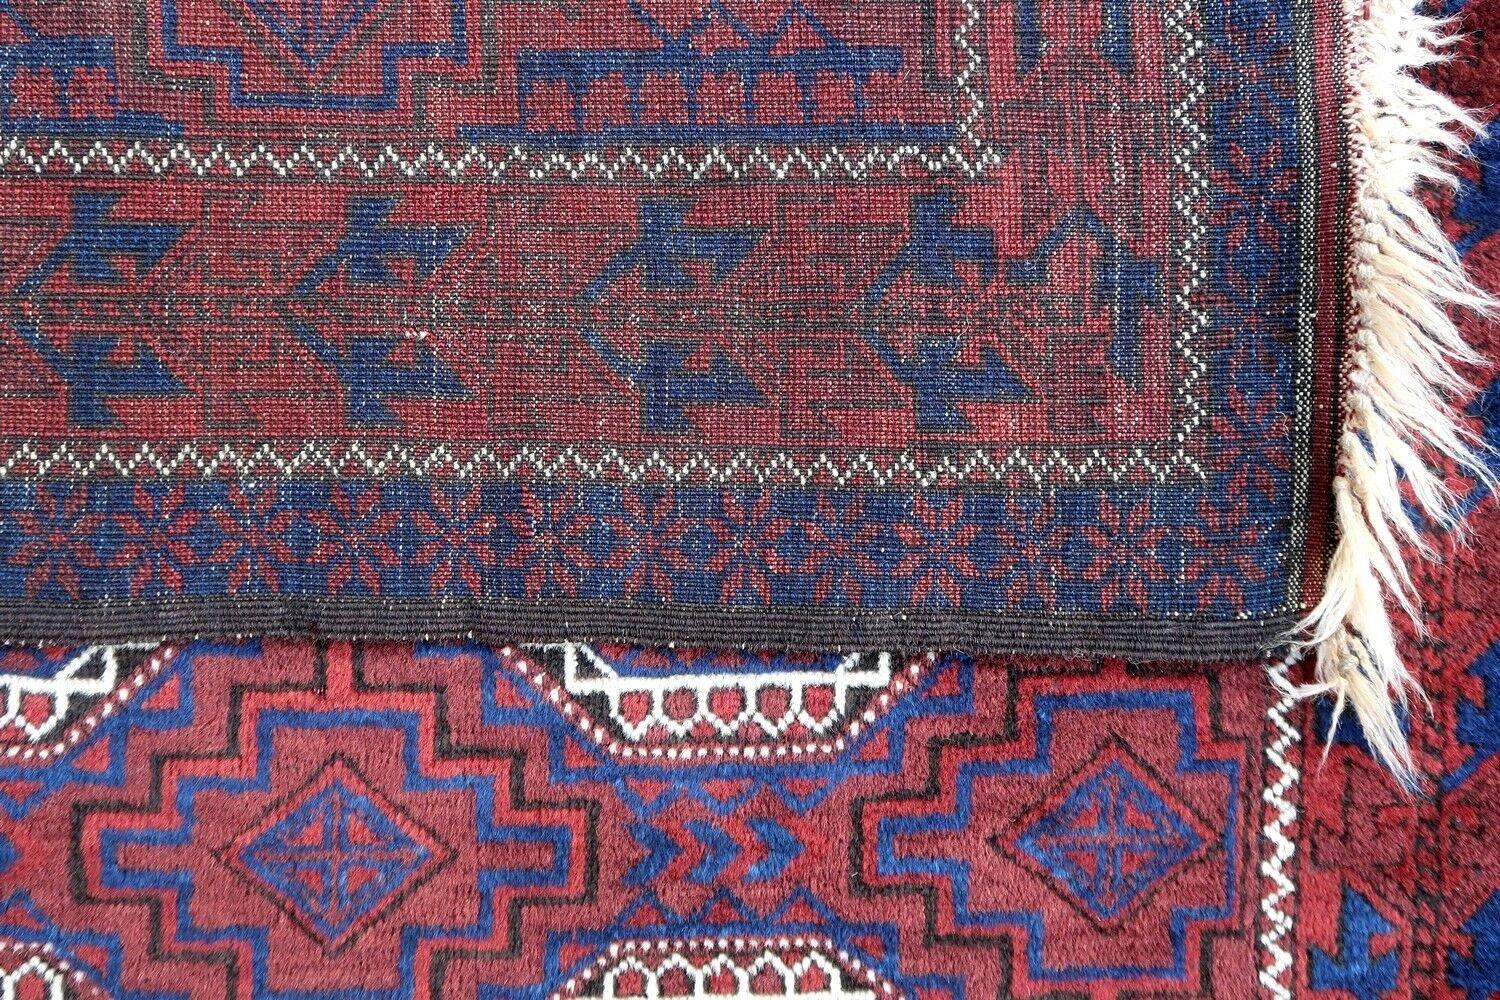 Handgefertigter antiker Belutsch-Teppich aus Zentralasien in gutem Originalzustand. Der Teppich stammt vom Anfang des 20. Jahrhunderts.

- Zustand: original gut,

- um: 1900,

- Größe: 3,9' x 5,6' (120cm x 170cm),

- Material: Wolle,

-